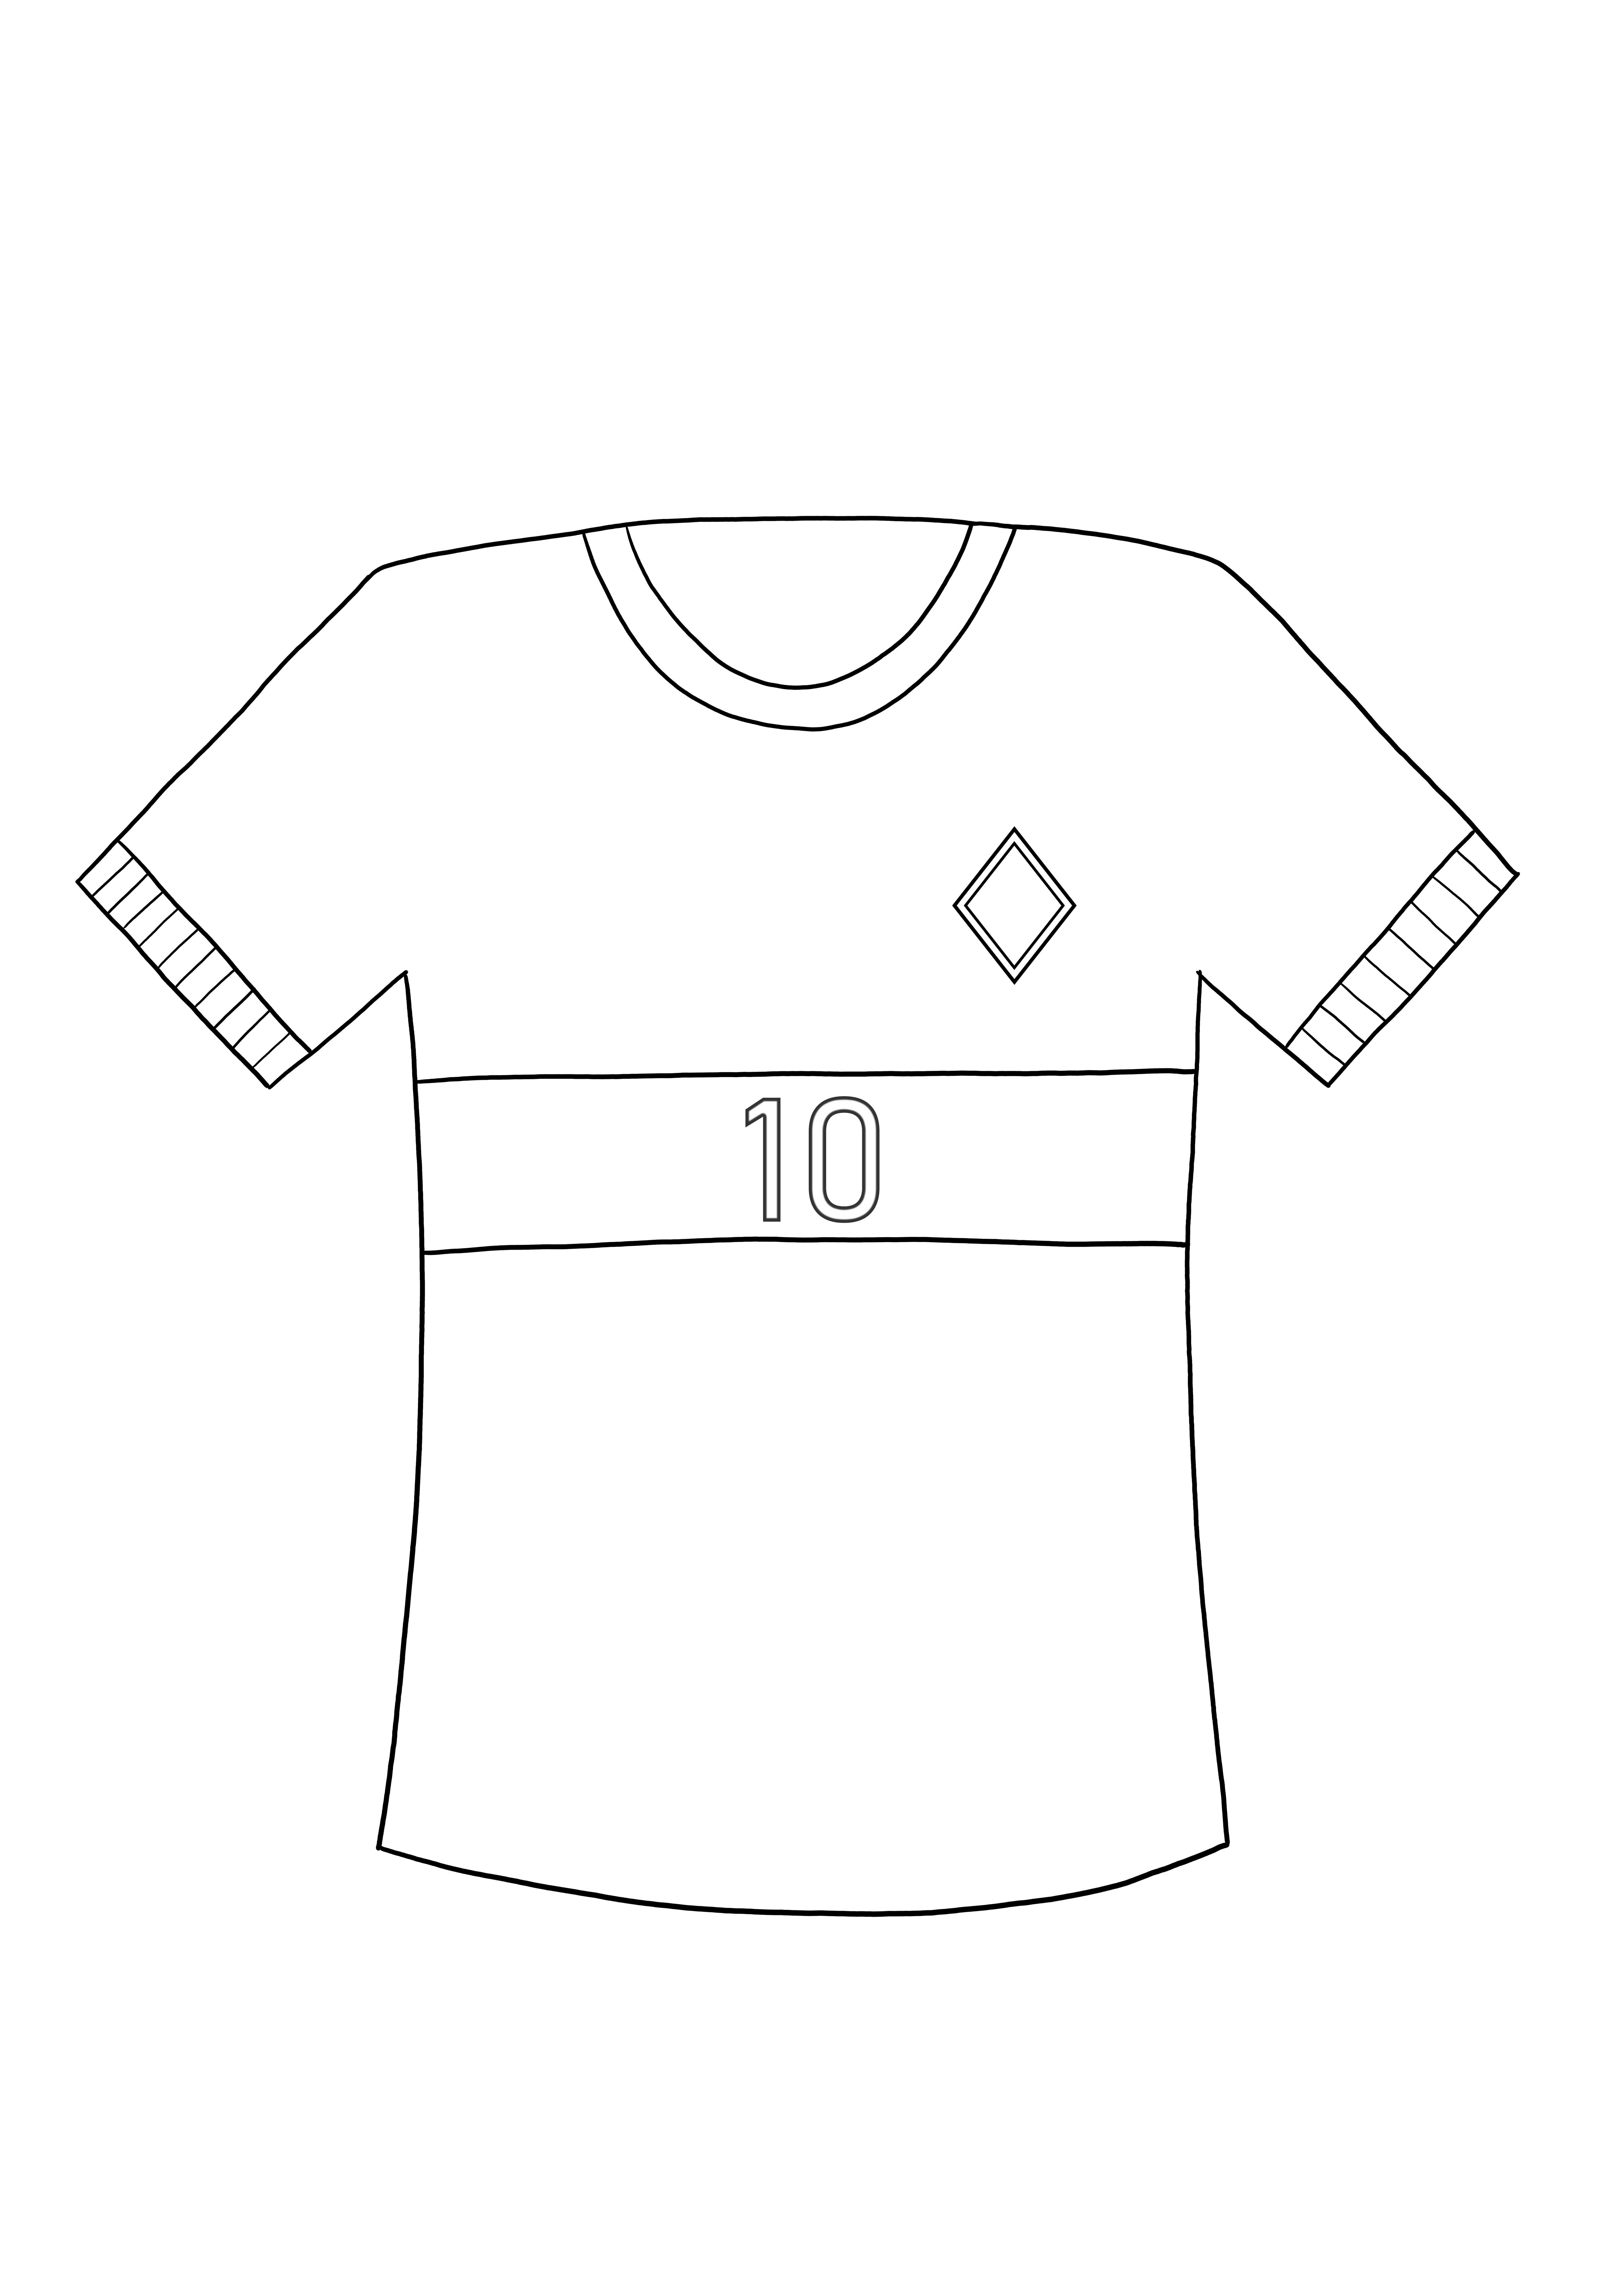 Tricou de fotbal - planșă de colorat educațional pentru imprimare gratuită